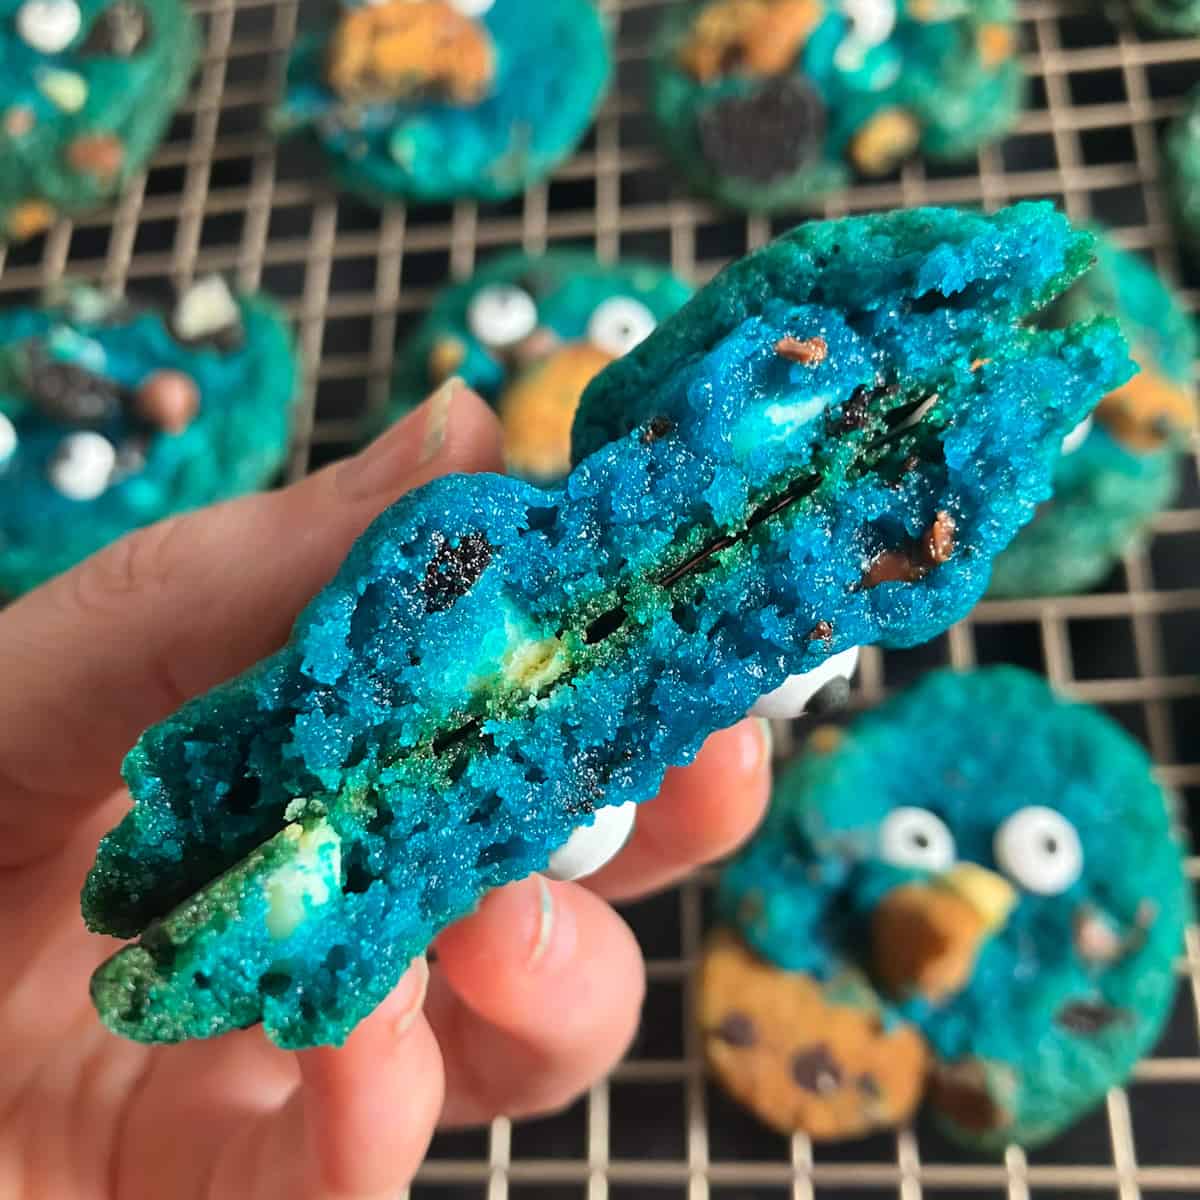 cookie monster cookie